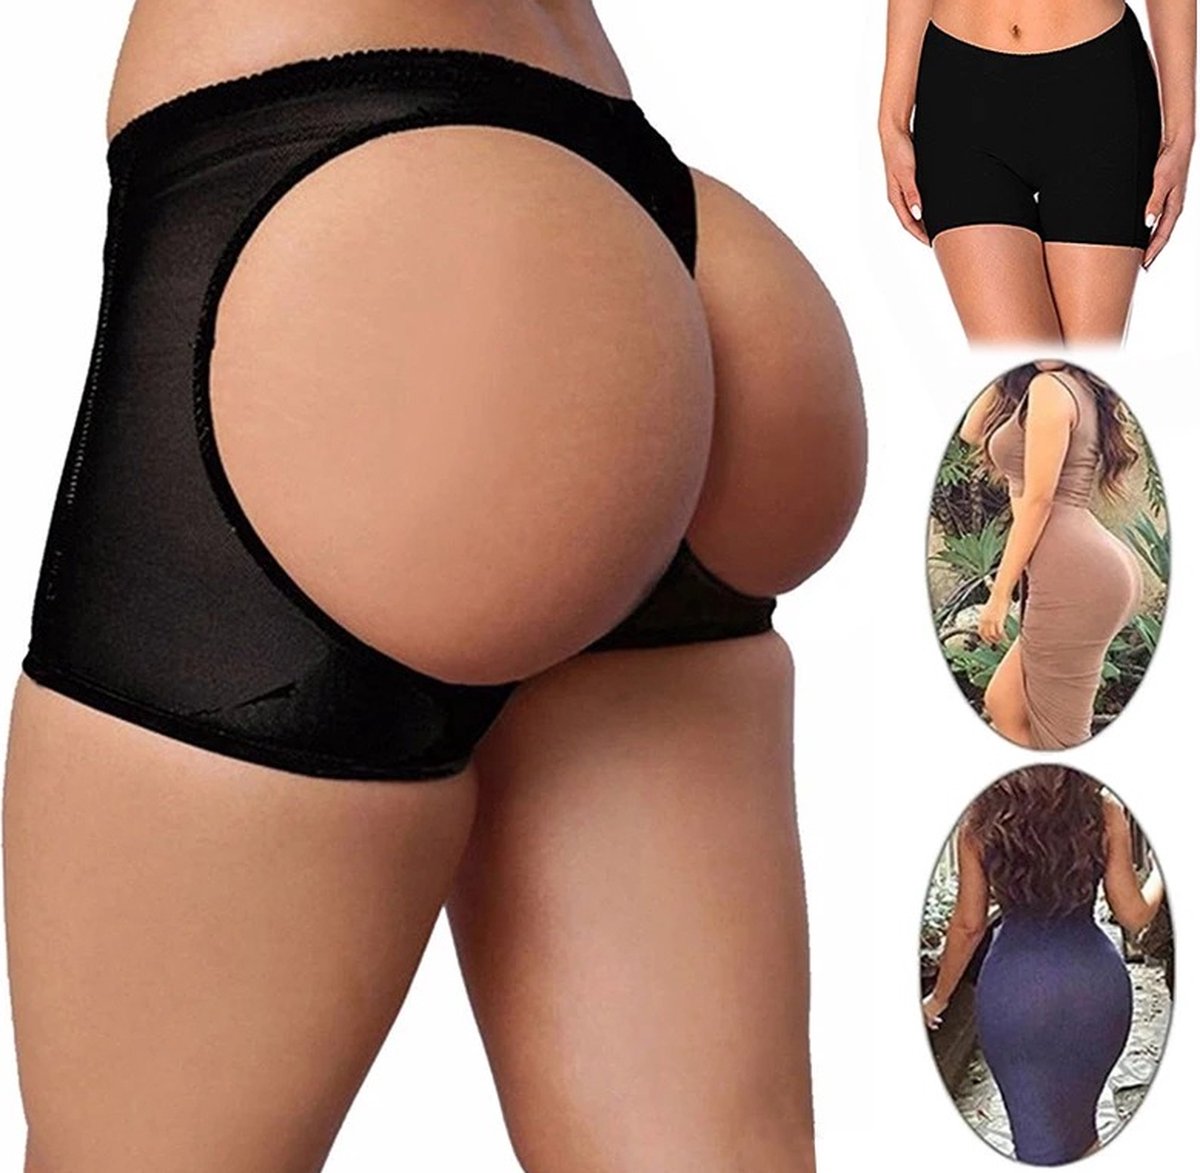 Butt Lifter - Butt lift onderbroek - Shapewear dames - Volle billen - Zwart - L